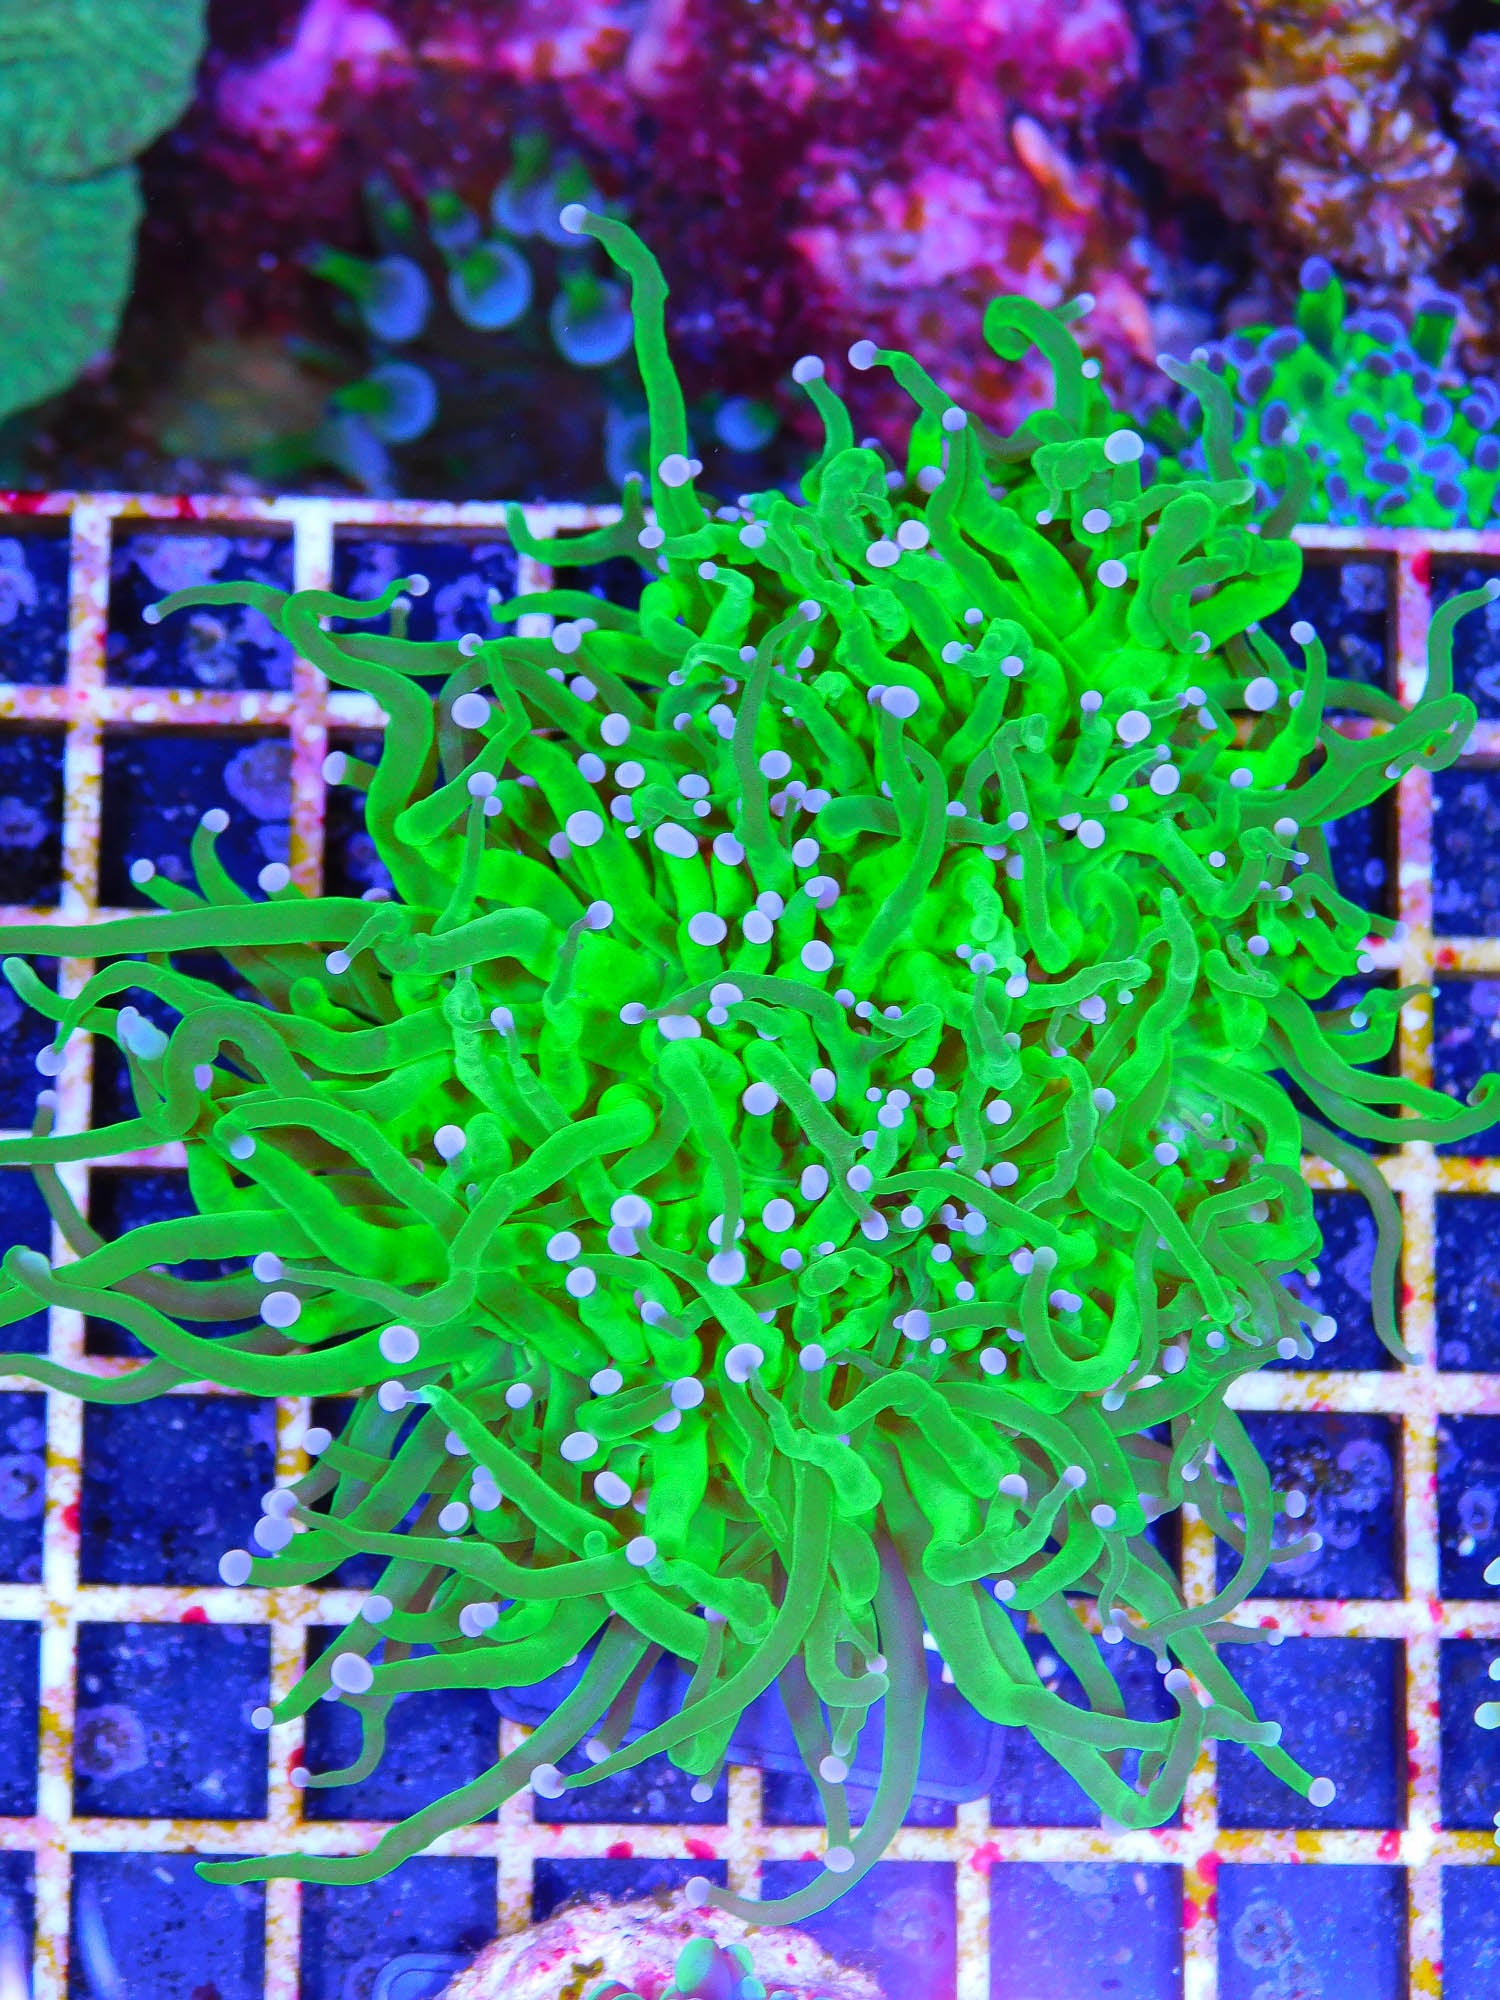 Euphyllia glabrescens "toxic green"